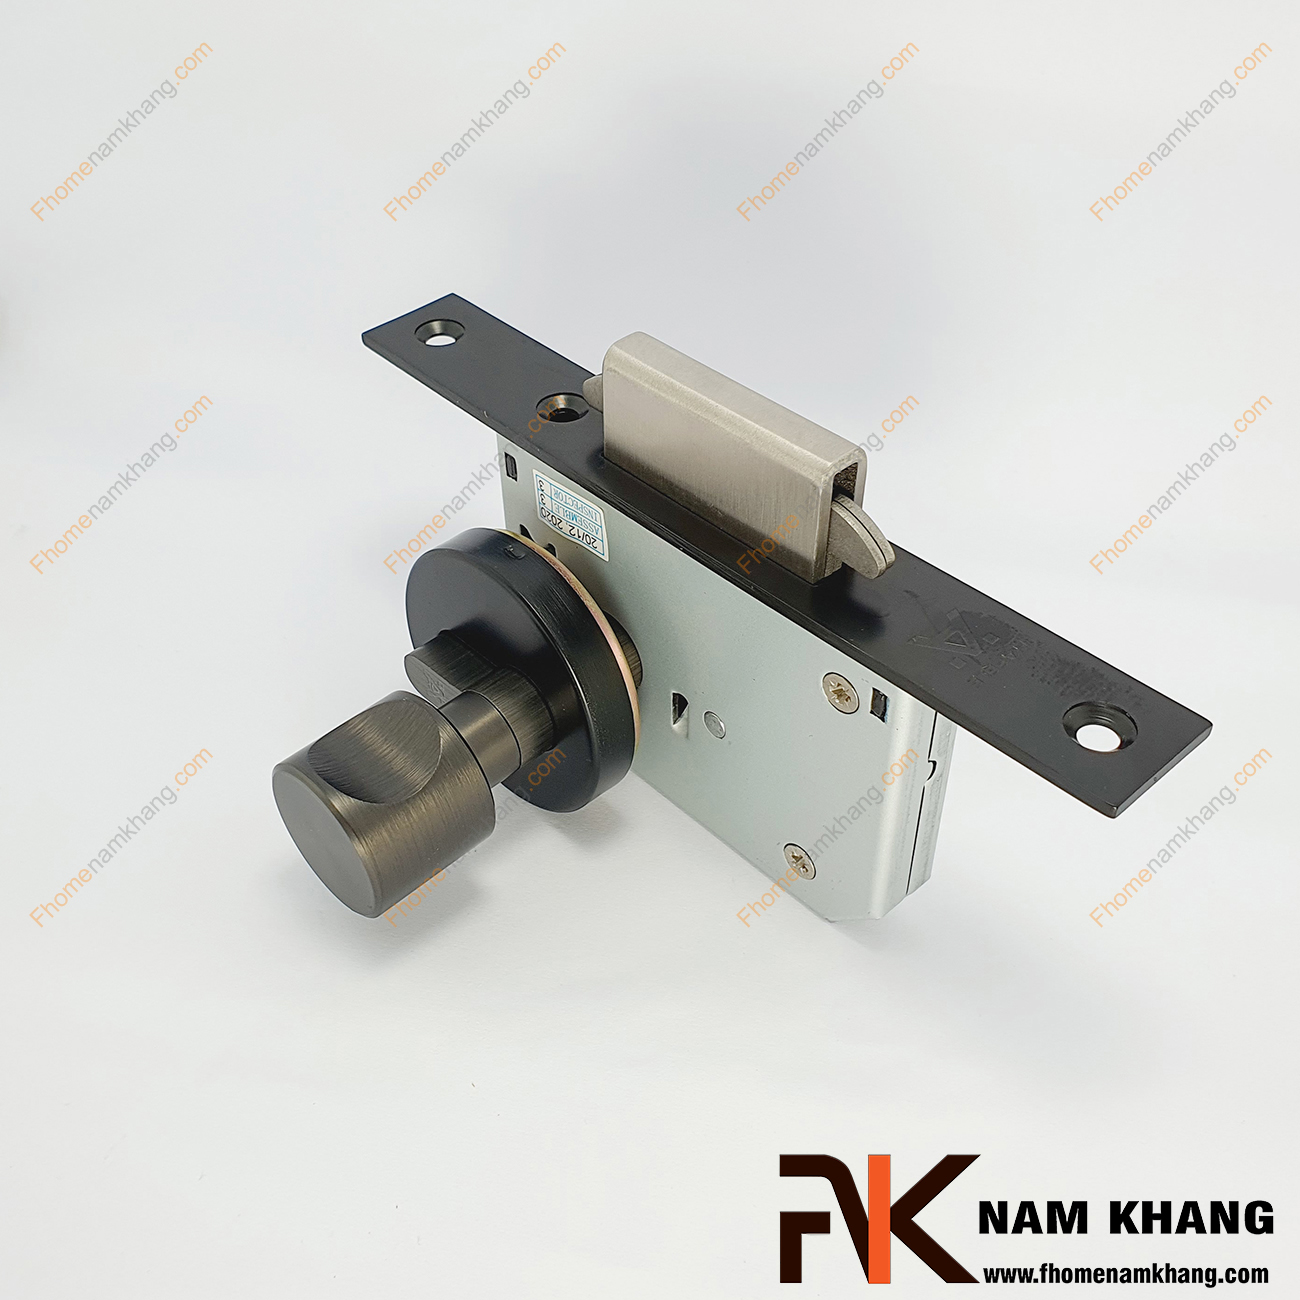 Khóa âm cửa lùa màu đen mờ NK556-D là dòng khóa thông dụng và được ưa chuộng sử dụng tại thị trường Việt Nam.  Nhờ tính chất gọn nhẹ, linh hoạt, dễ lắp đặt và sử dụng, lại mang yếu tố thẫm mĩ cao